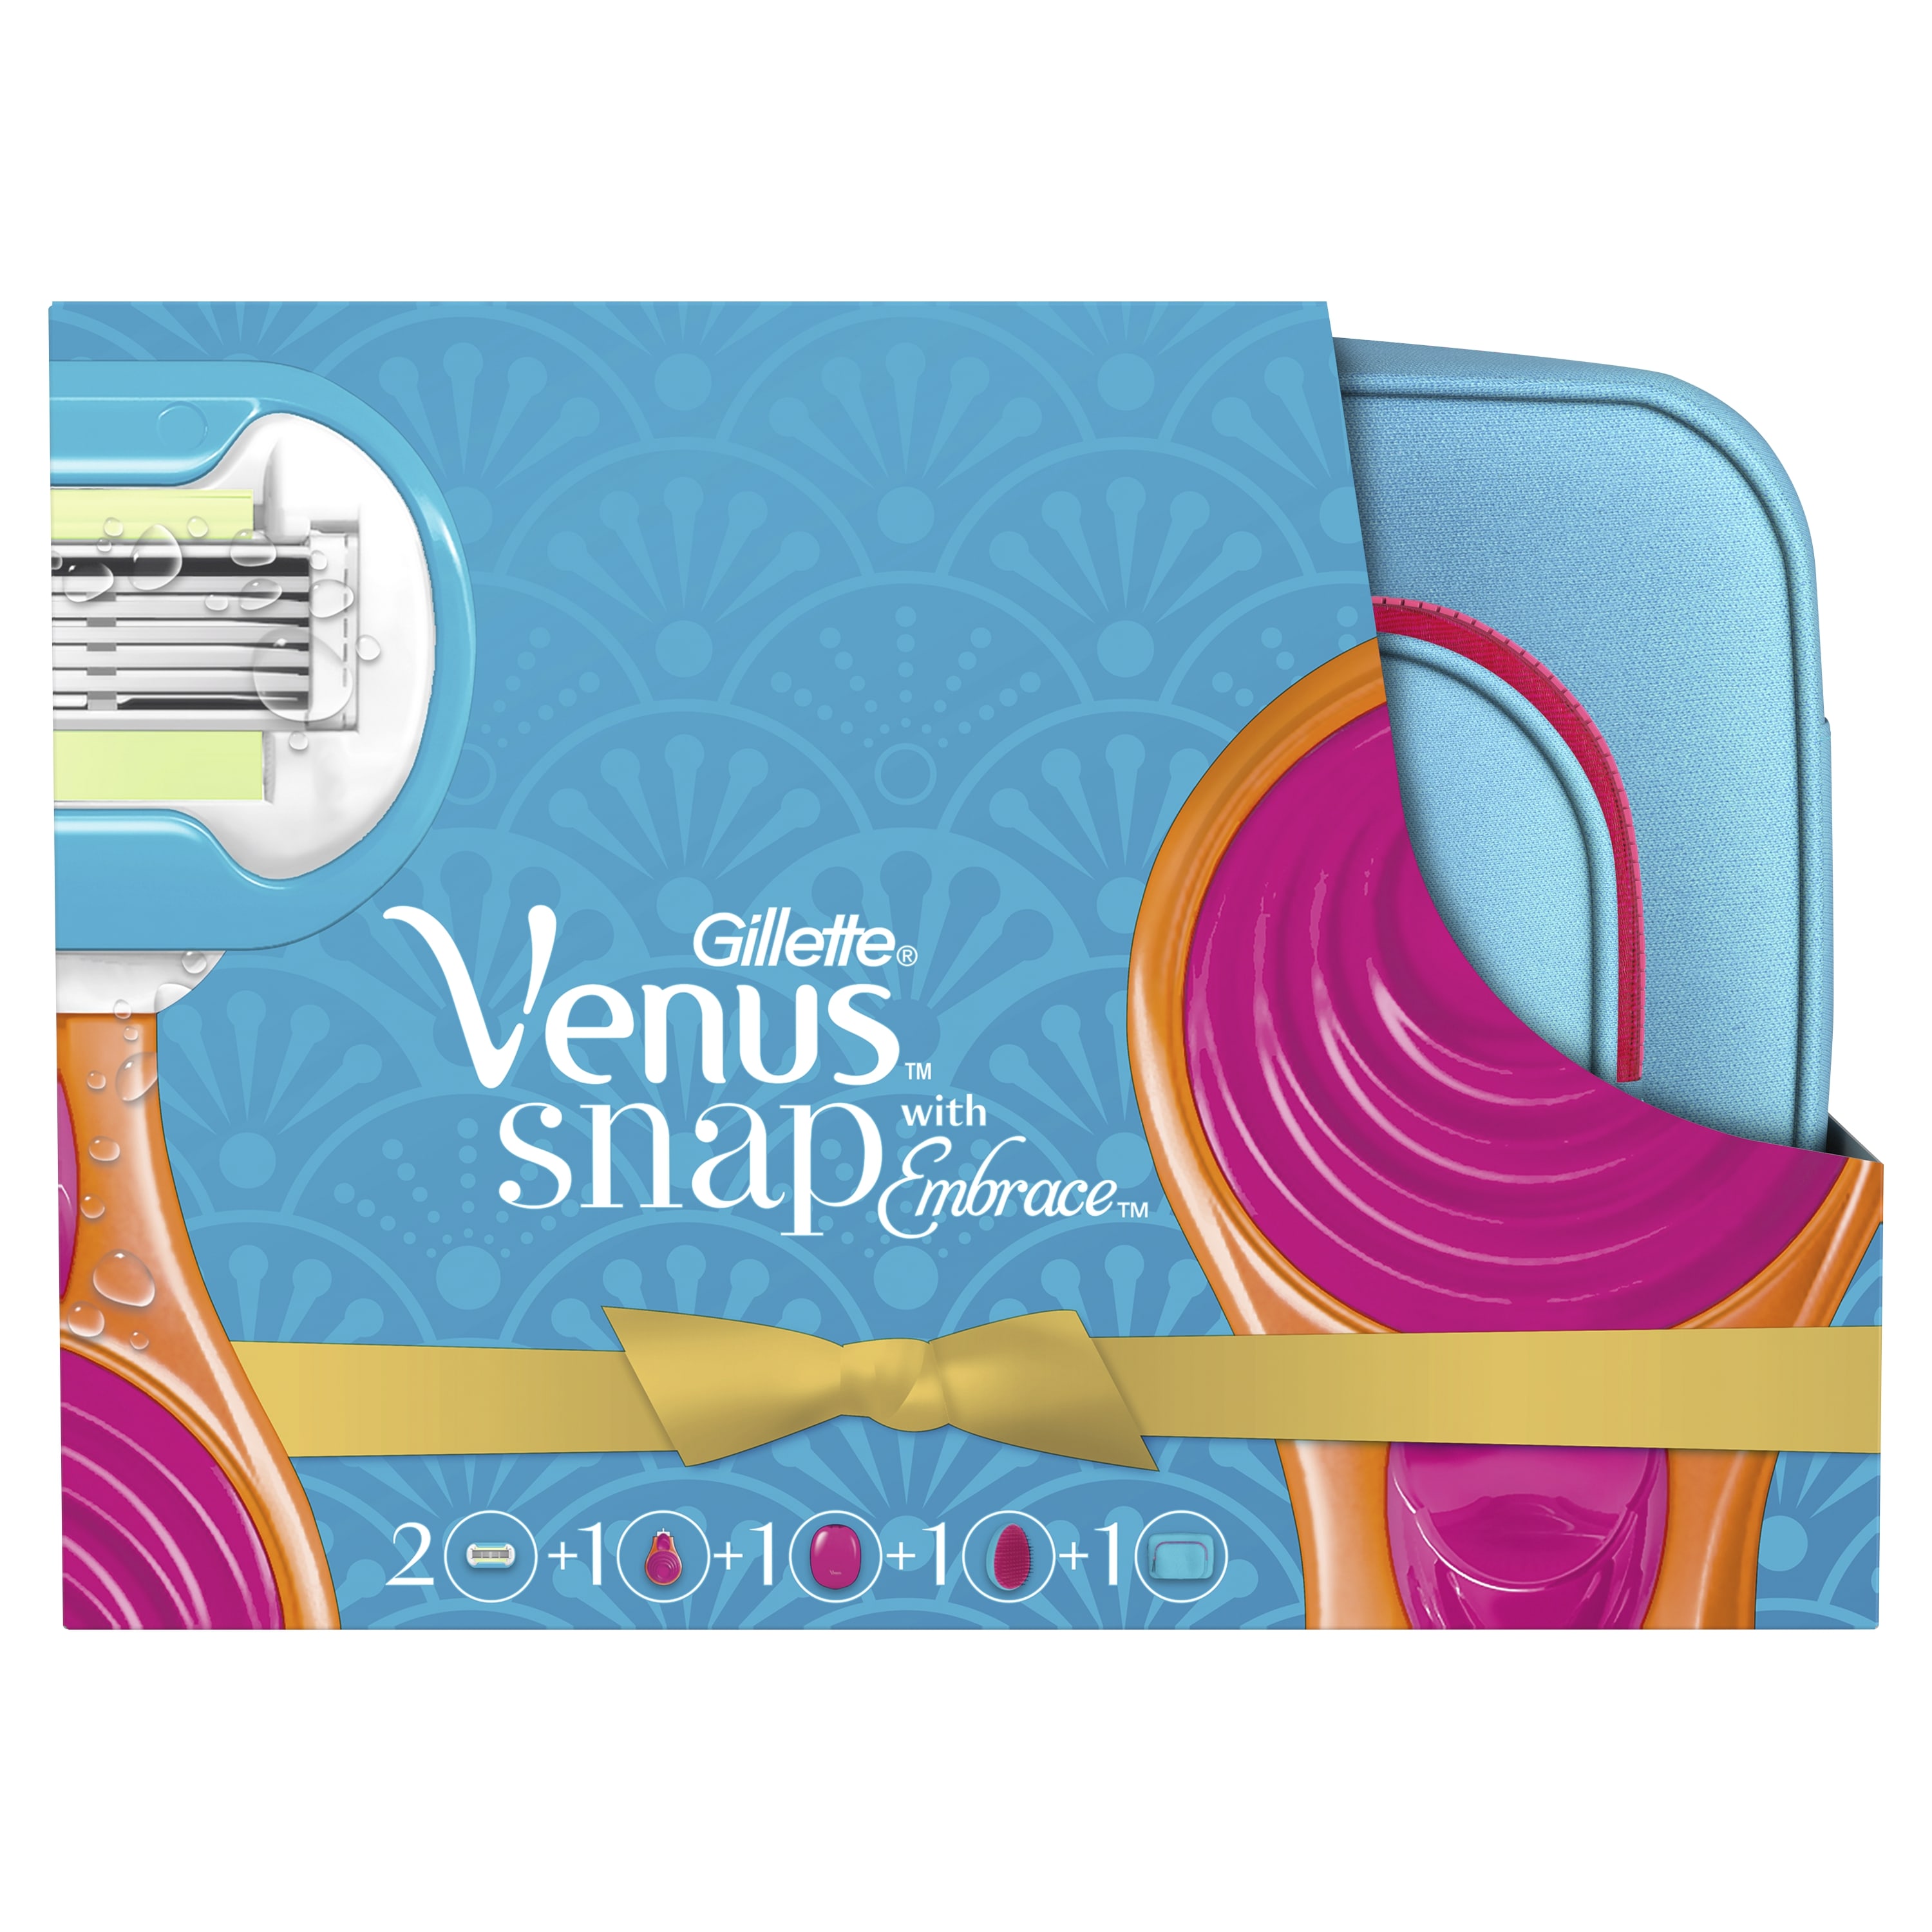 Подарочный набор VENUS Snap Embrace бритва с 1 сменной кассетой+косметичка+расческа спонж для макияжа rimei sp210 набор с футляром для хранения желтый